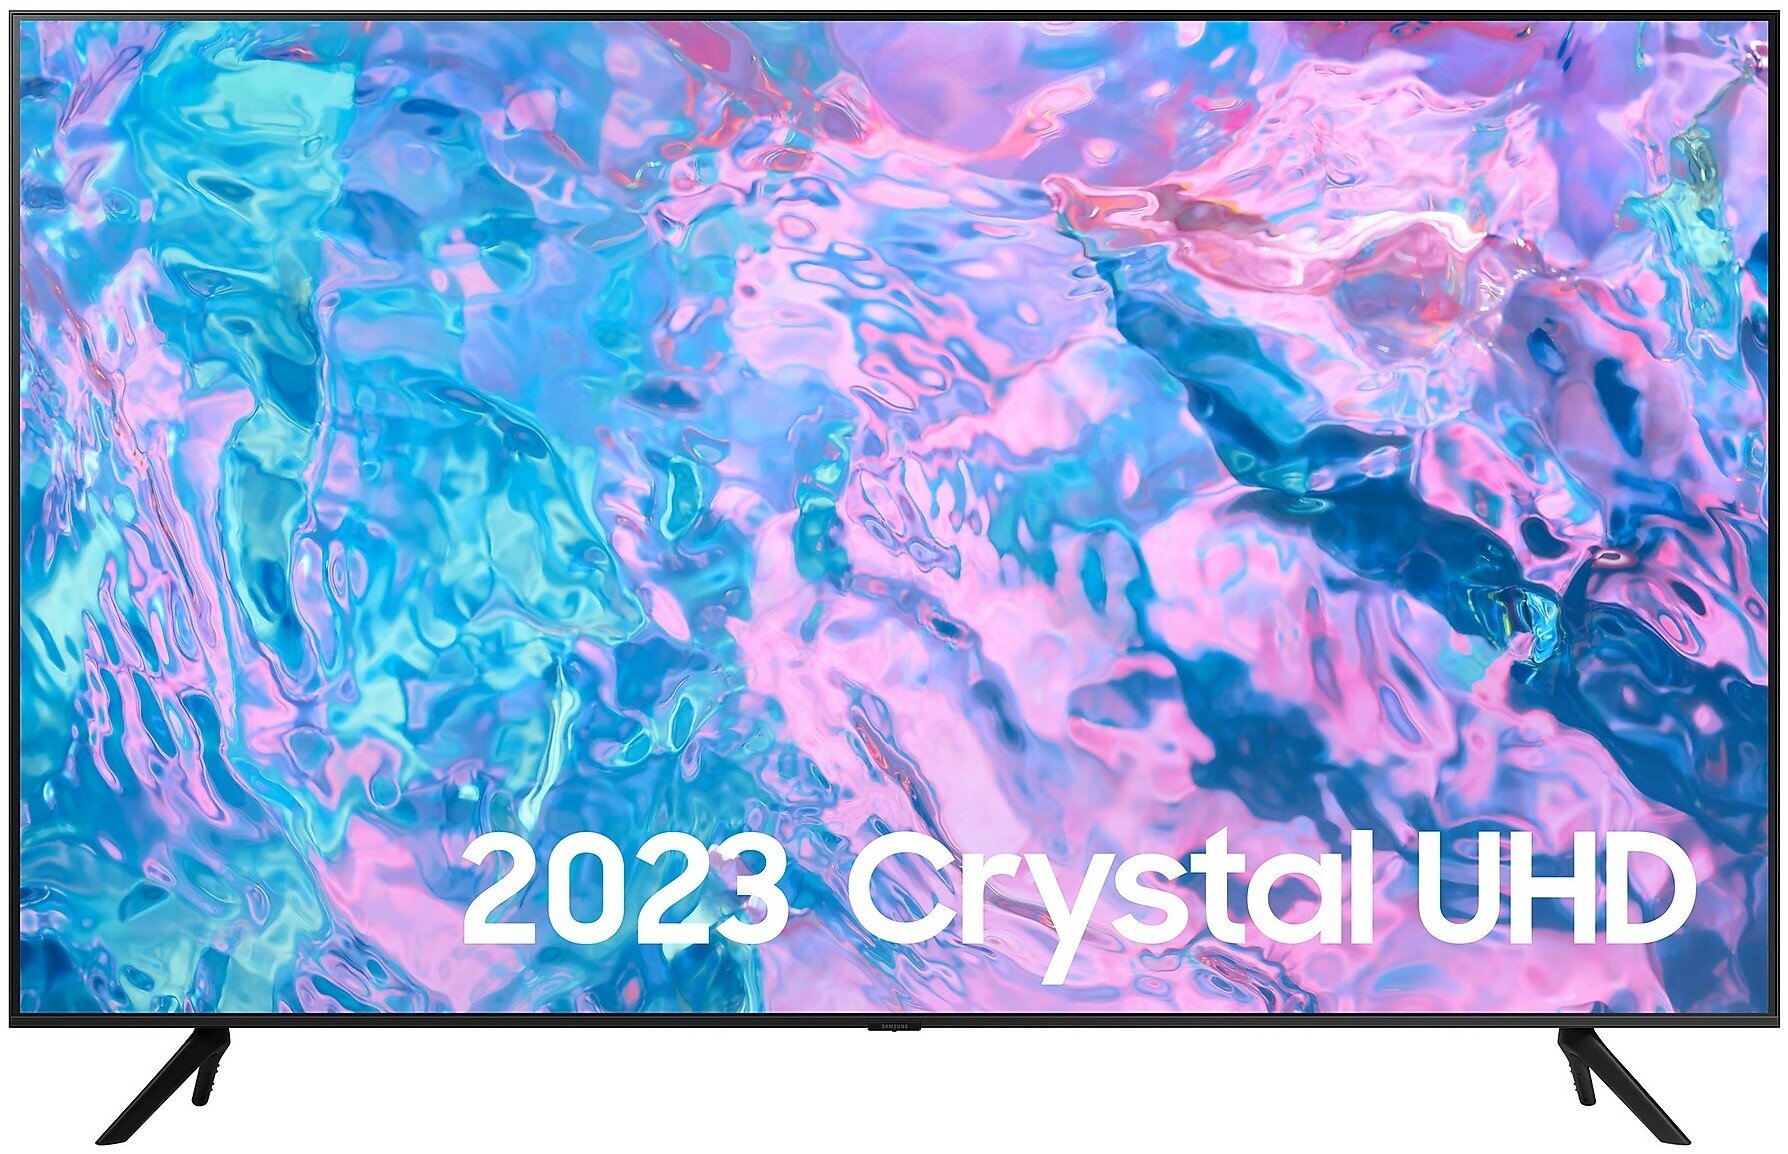 50" Телевизор Samsung UE50CU7100U 2023 Crystal UHD, HDR, LED